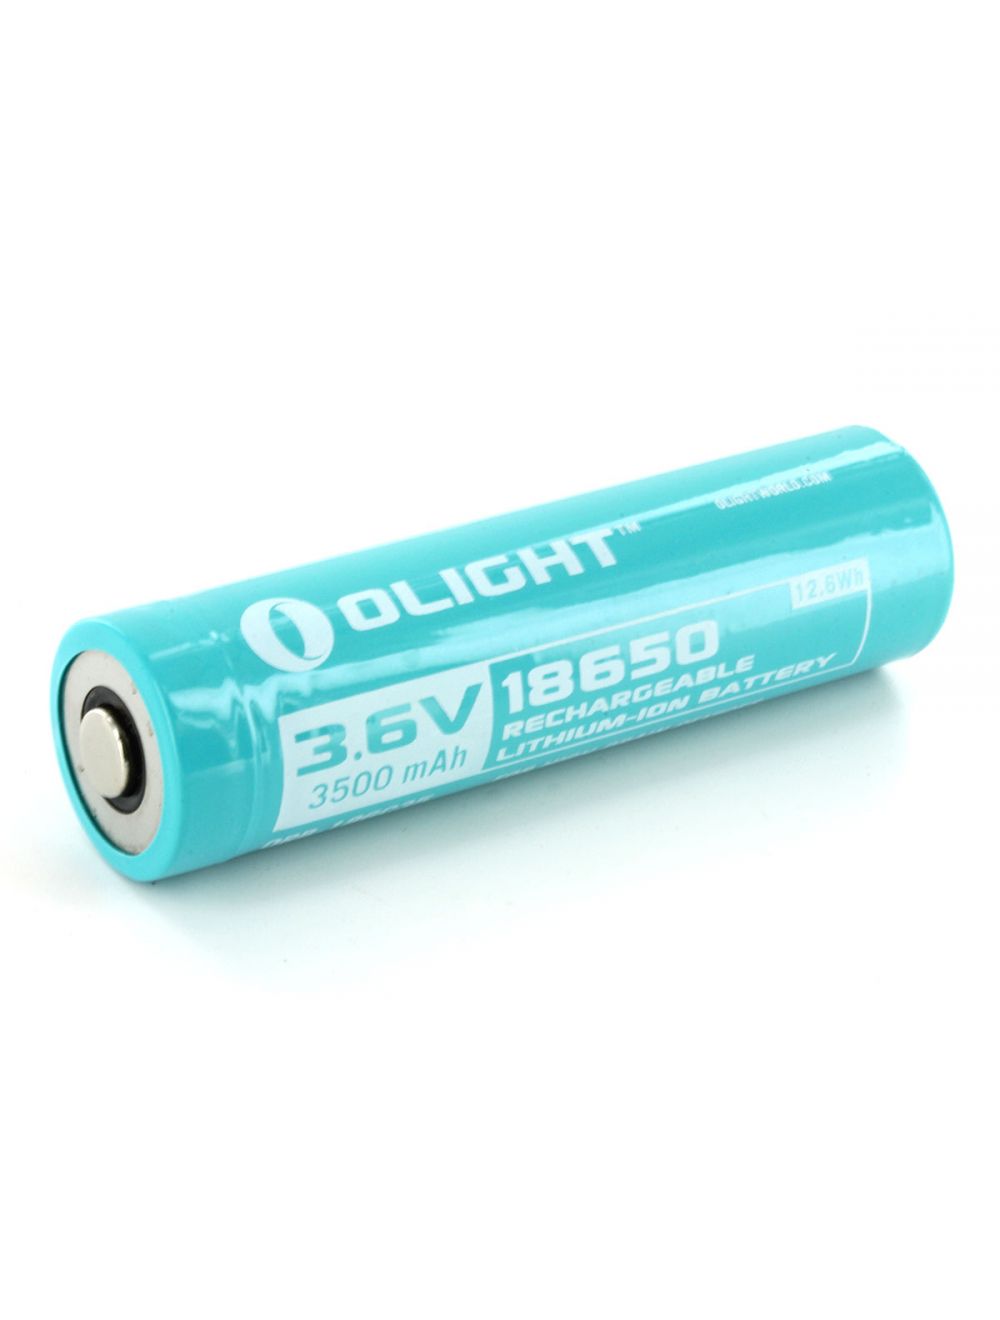 Cumulatief Bungalow Bloesem Olight Li-Ion batterij voor Olight S30RIII kopen? Zaklampen.nl